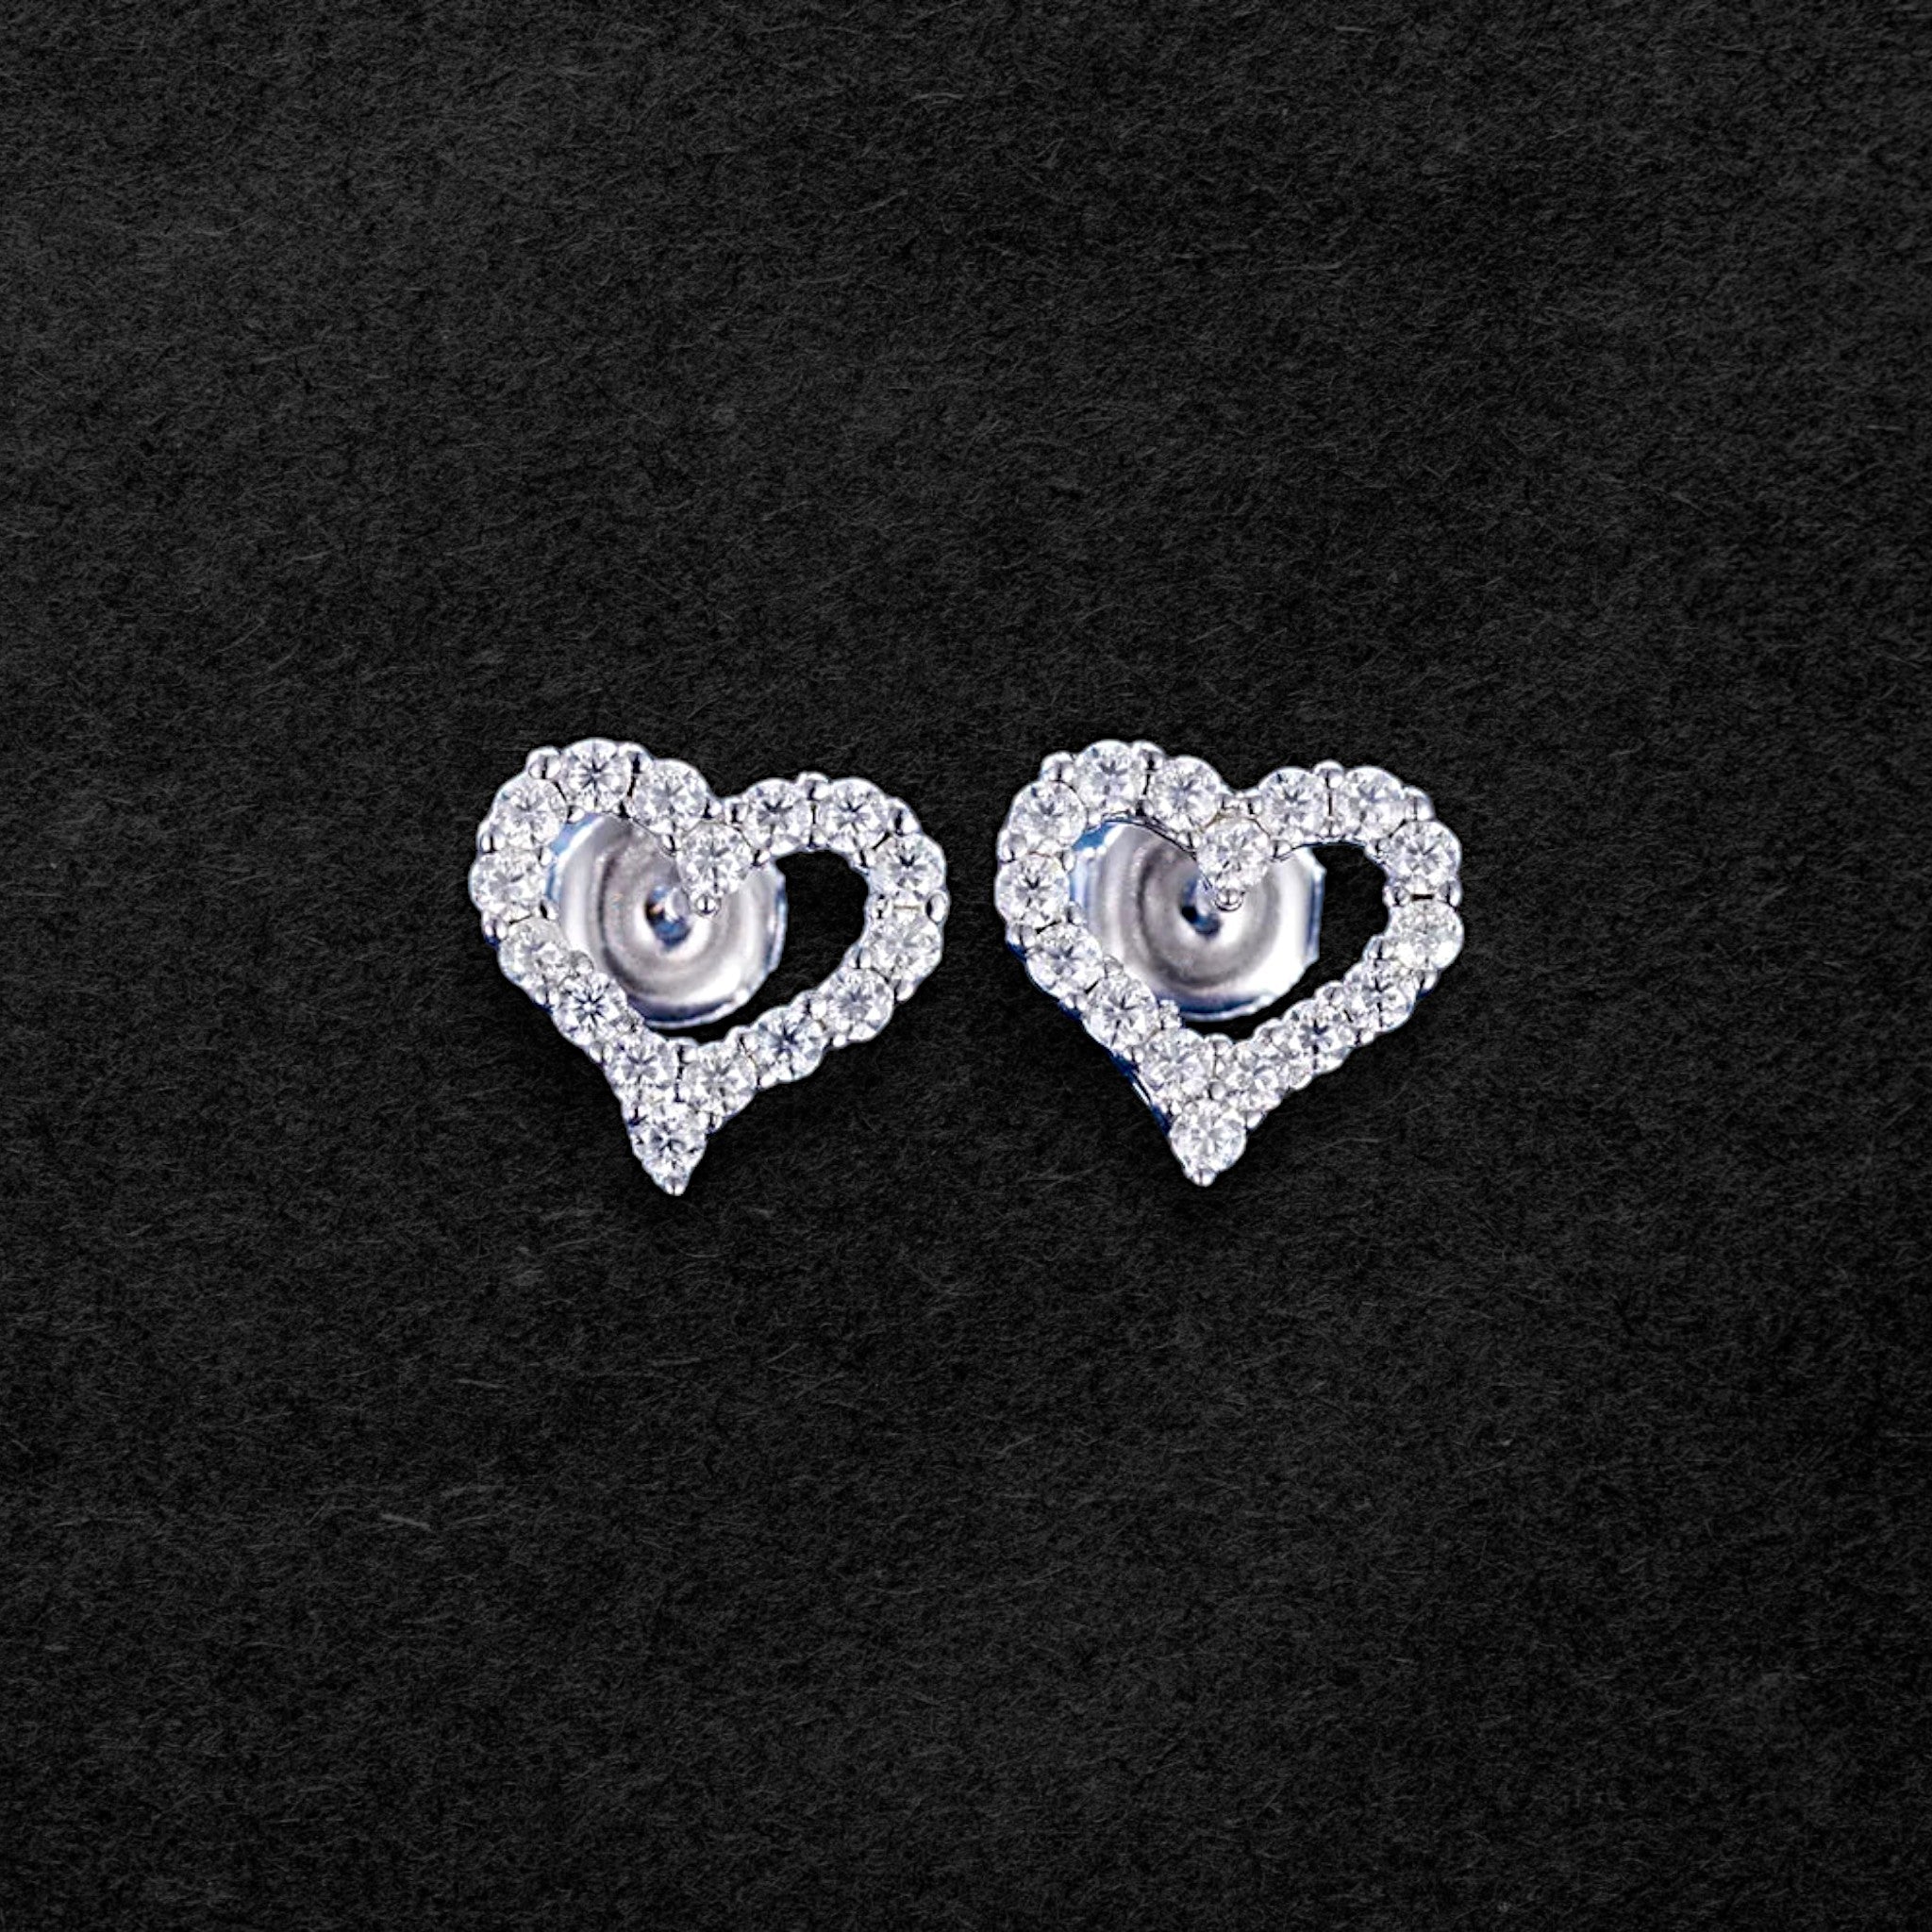 Romantic Moissanite Love Heart Stud Earrings